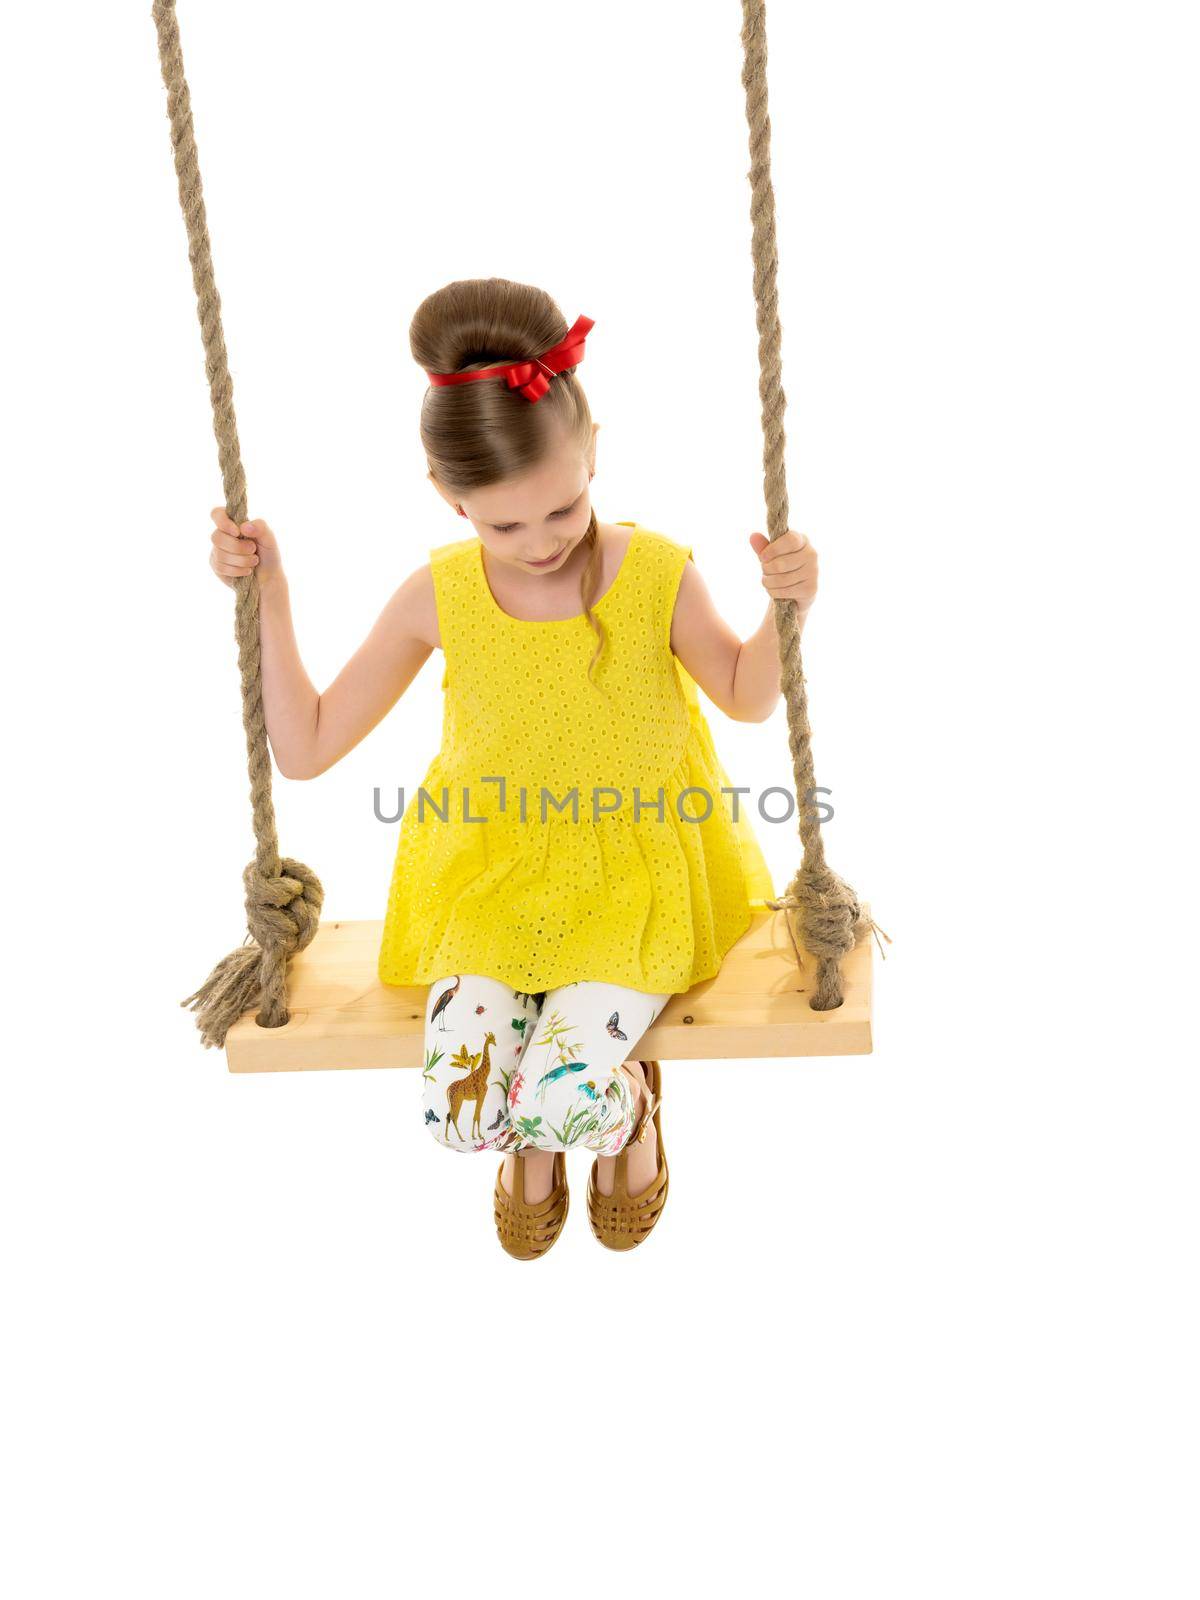 Joyful little girl swinging on a swing. by kolesnikov_studio